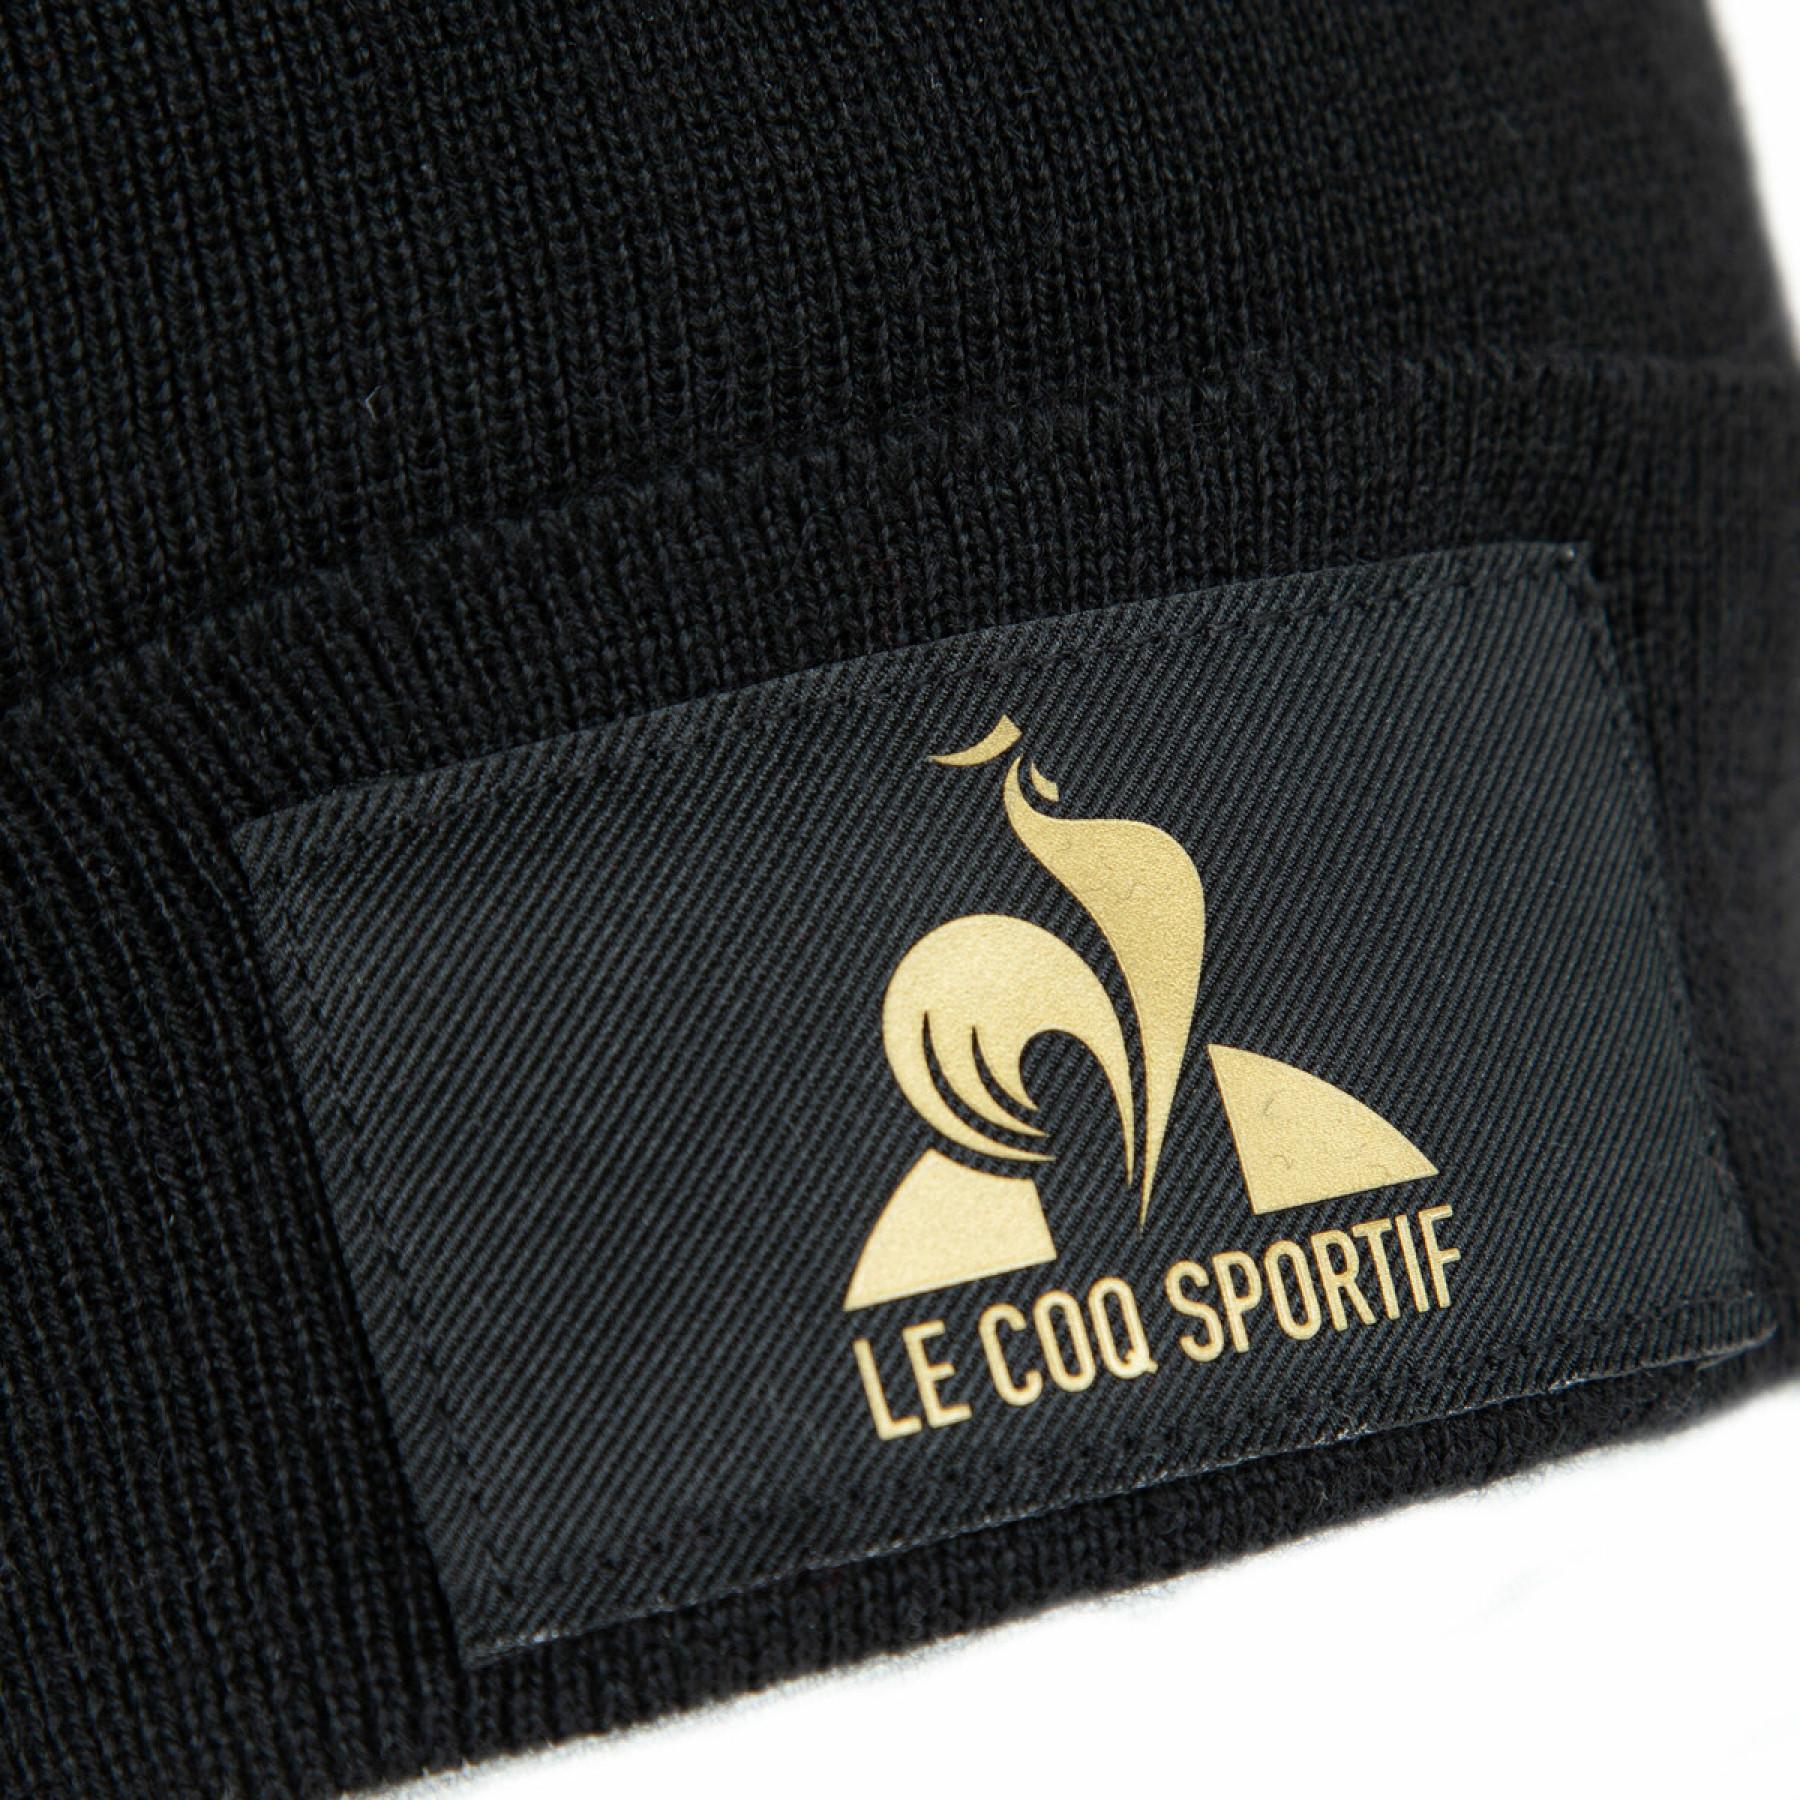 Bonnet Le Coq Sportif coq d'or n°1